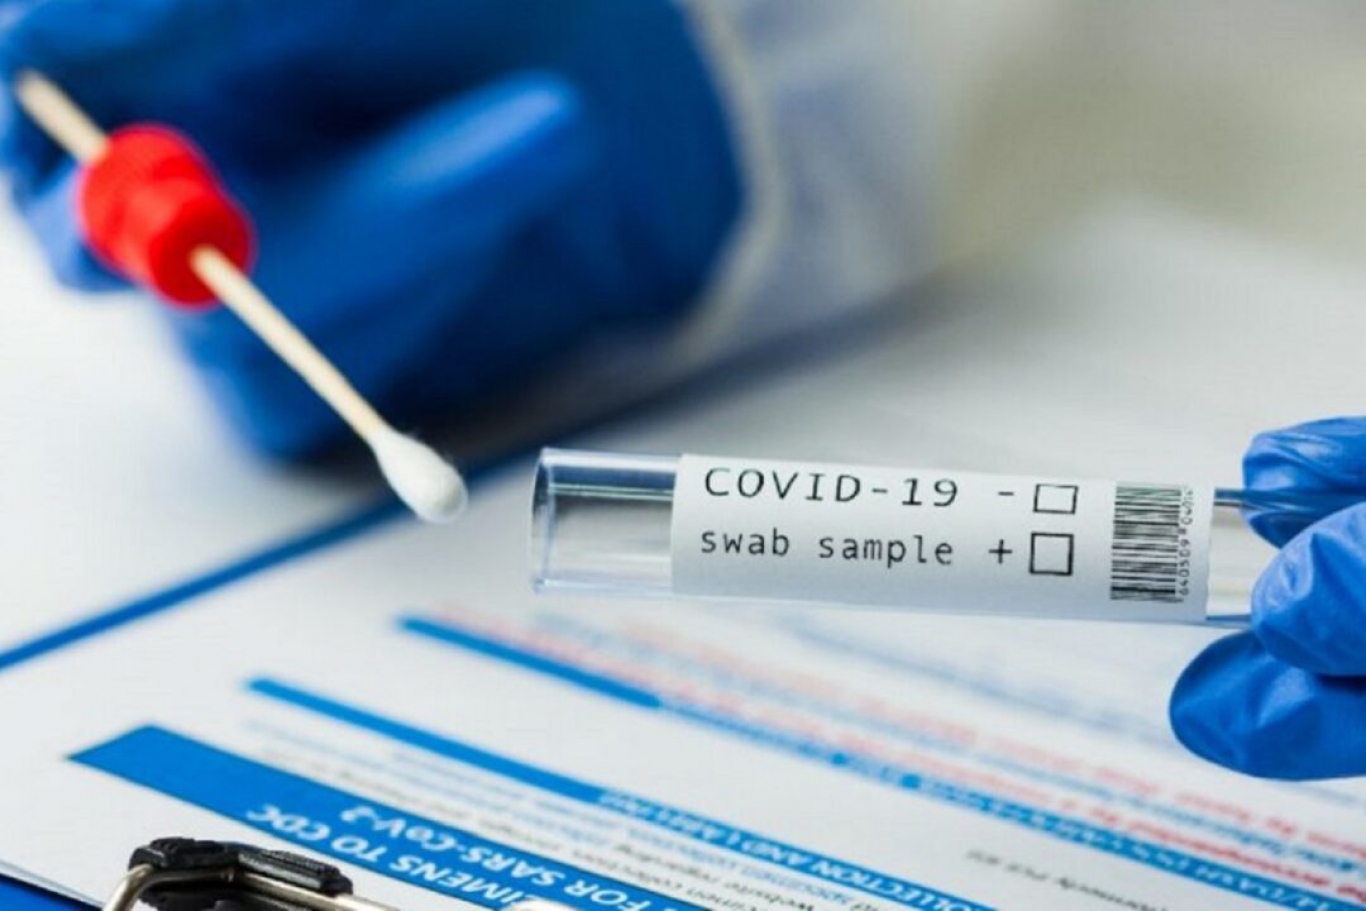 "Un test PCR negativo no descarta estar infectado si la persona está en período de incubación", Dr. Javier Farina